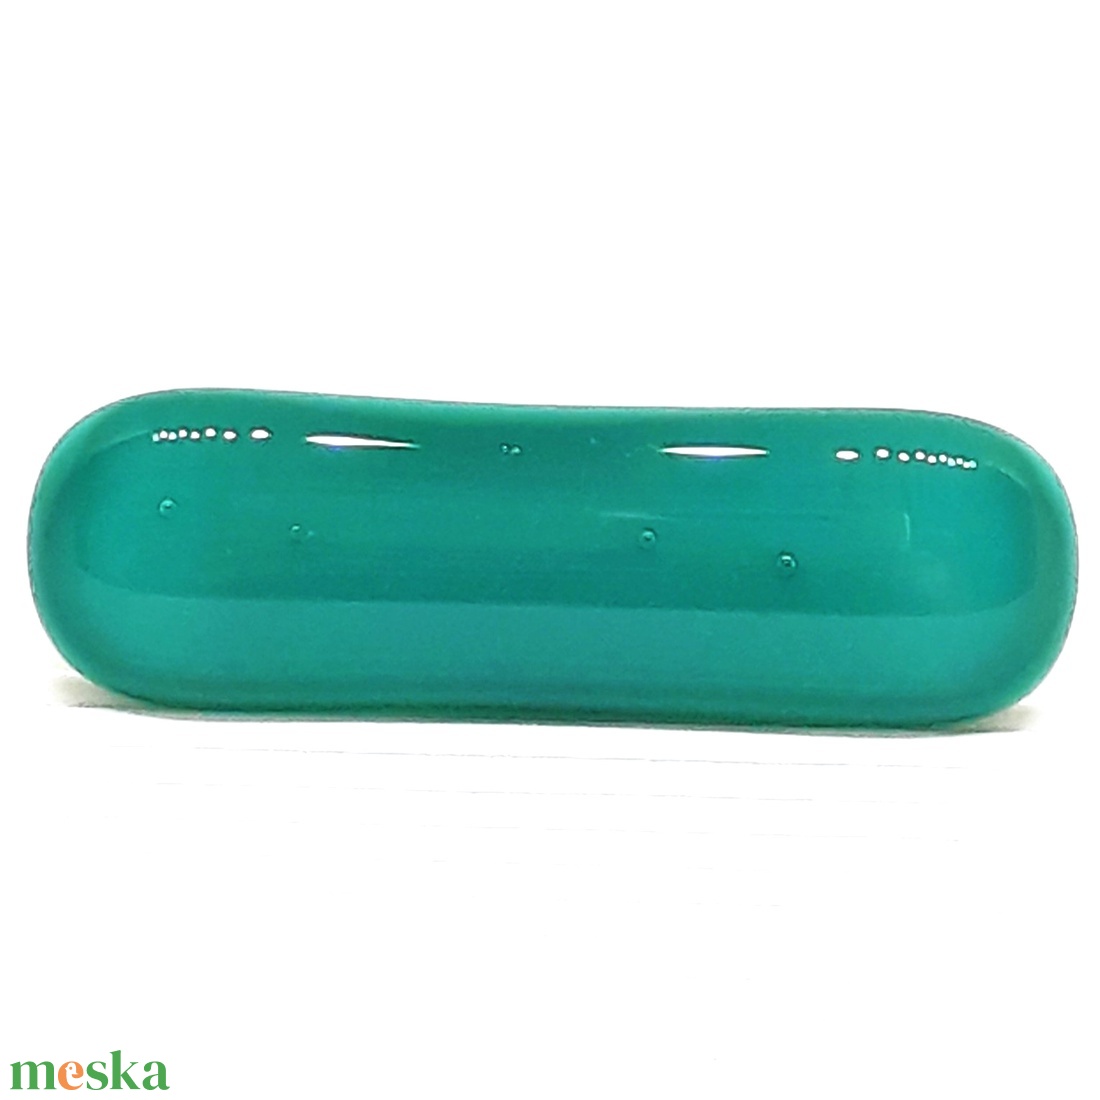 NEMESACÉL! - Hamvas smaragd extravagáns maxi üveg gyűrű, üvegékszer - ékszer - gyűrű - statement gyűrű - Meska.hu